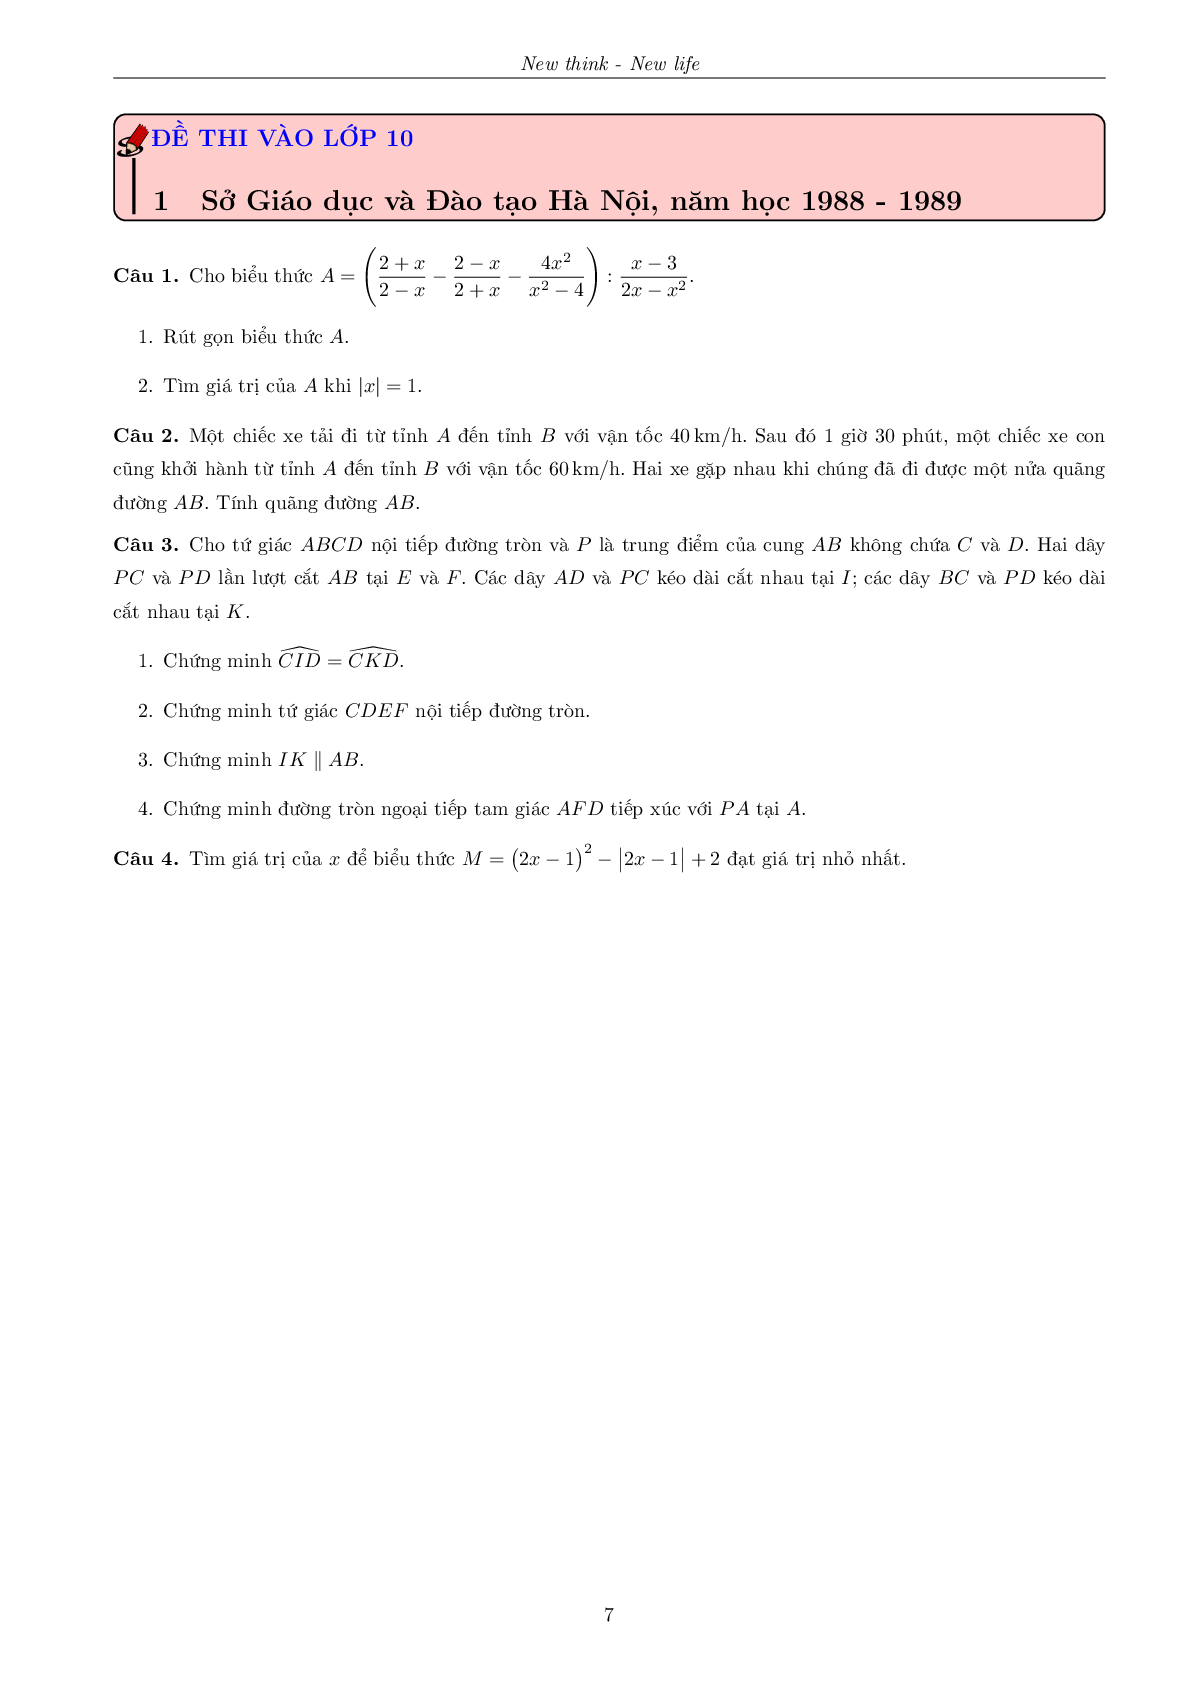 Tuyển tập đề thi vào lớp 10 thành phố Hà Nội qua các năm (trang 7)